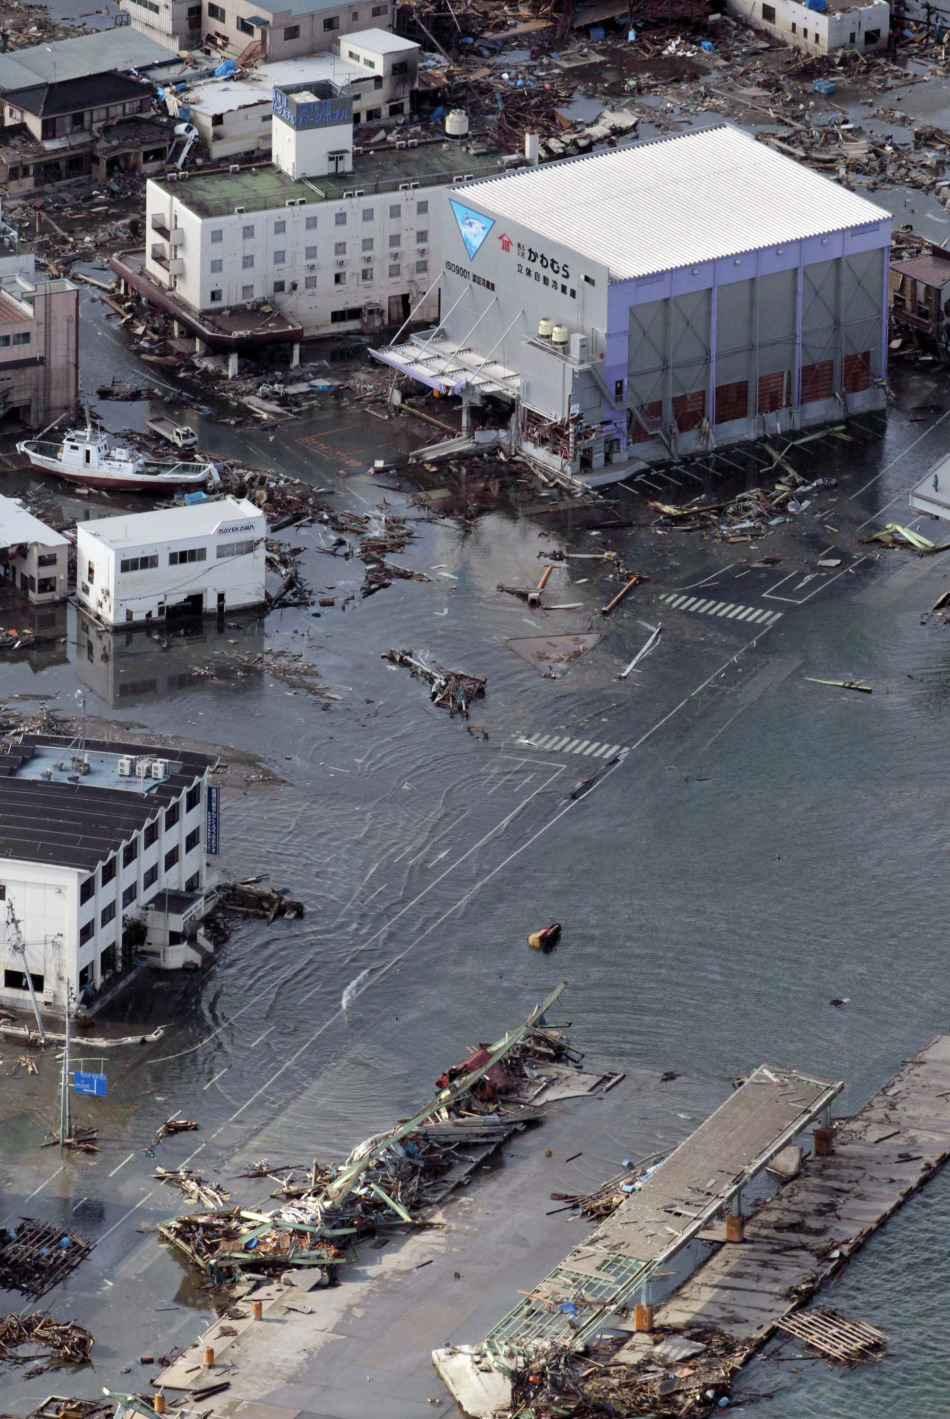 日本暴雨引发洪水图片